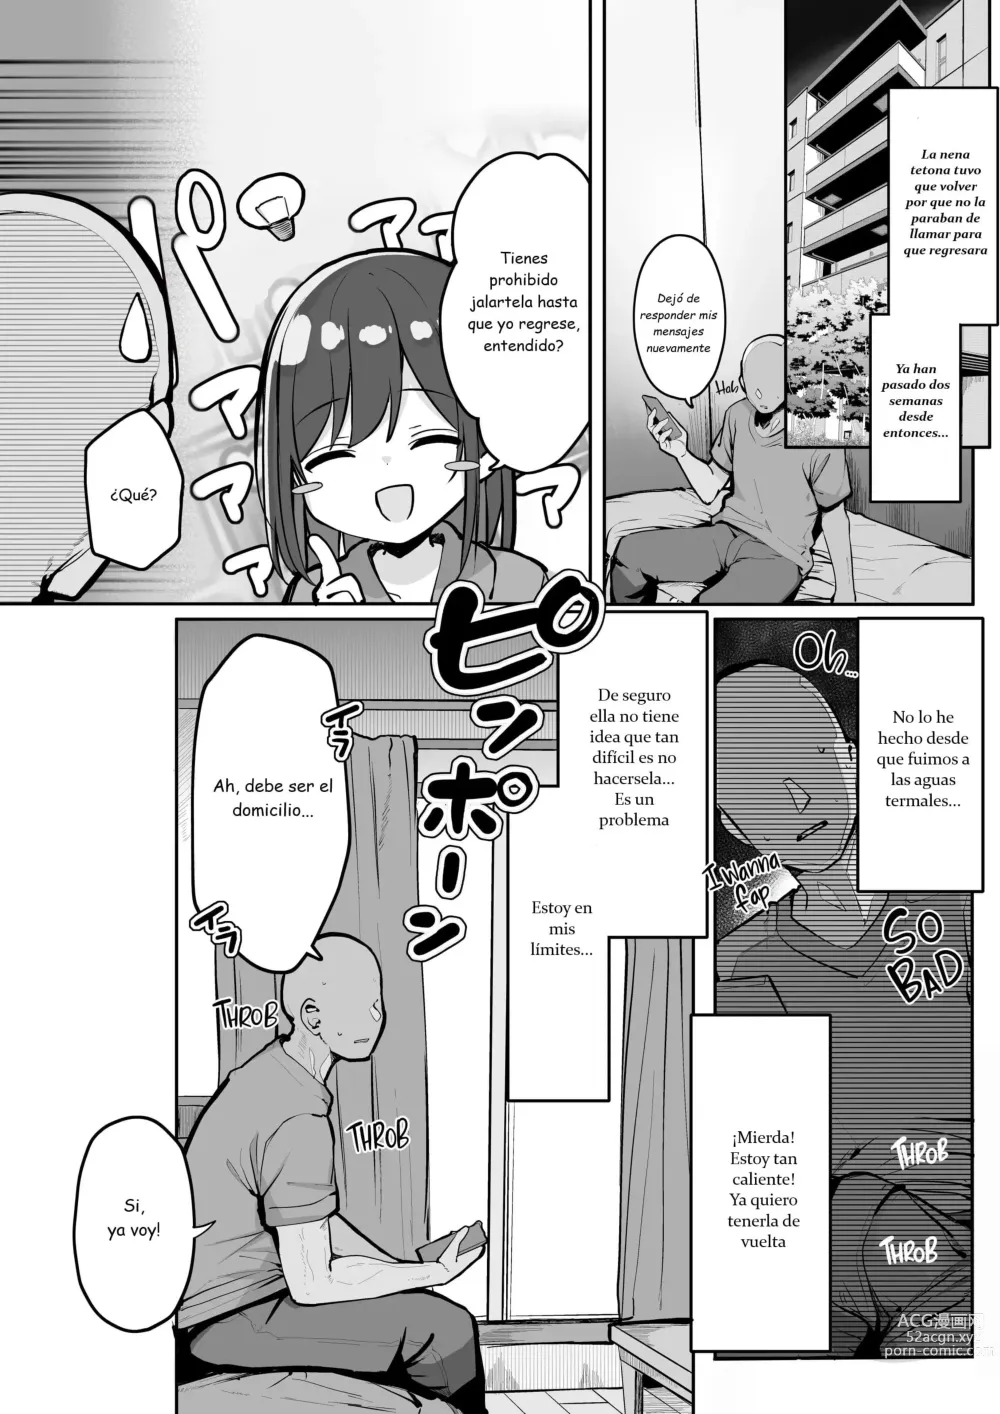 Page 2 of doujinshi Hey, donde está el condón?